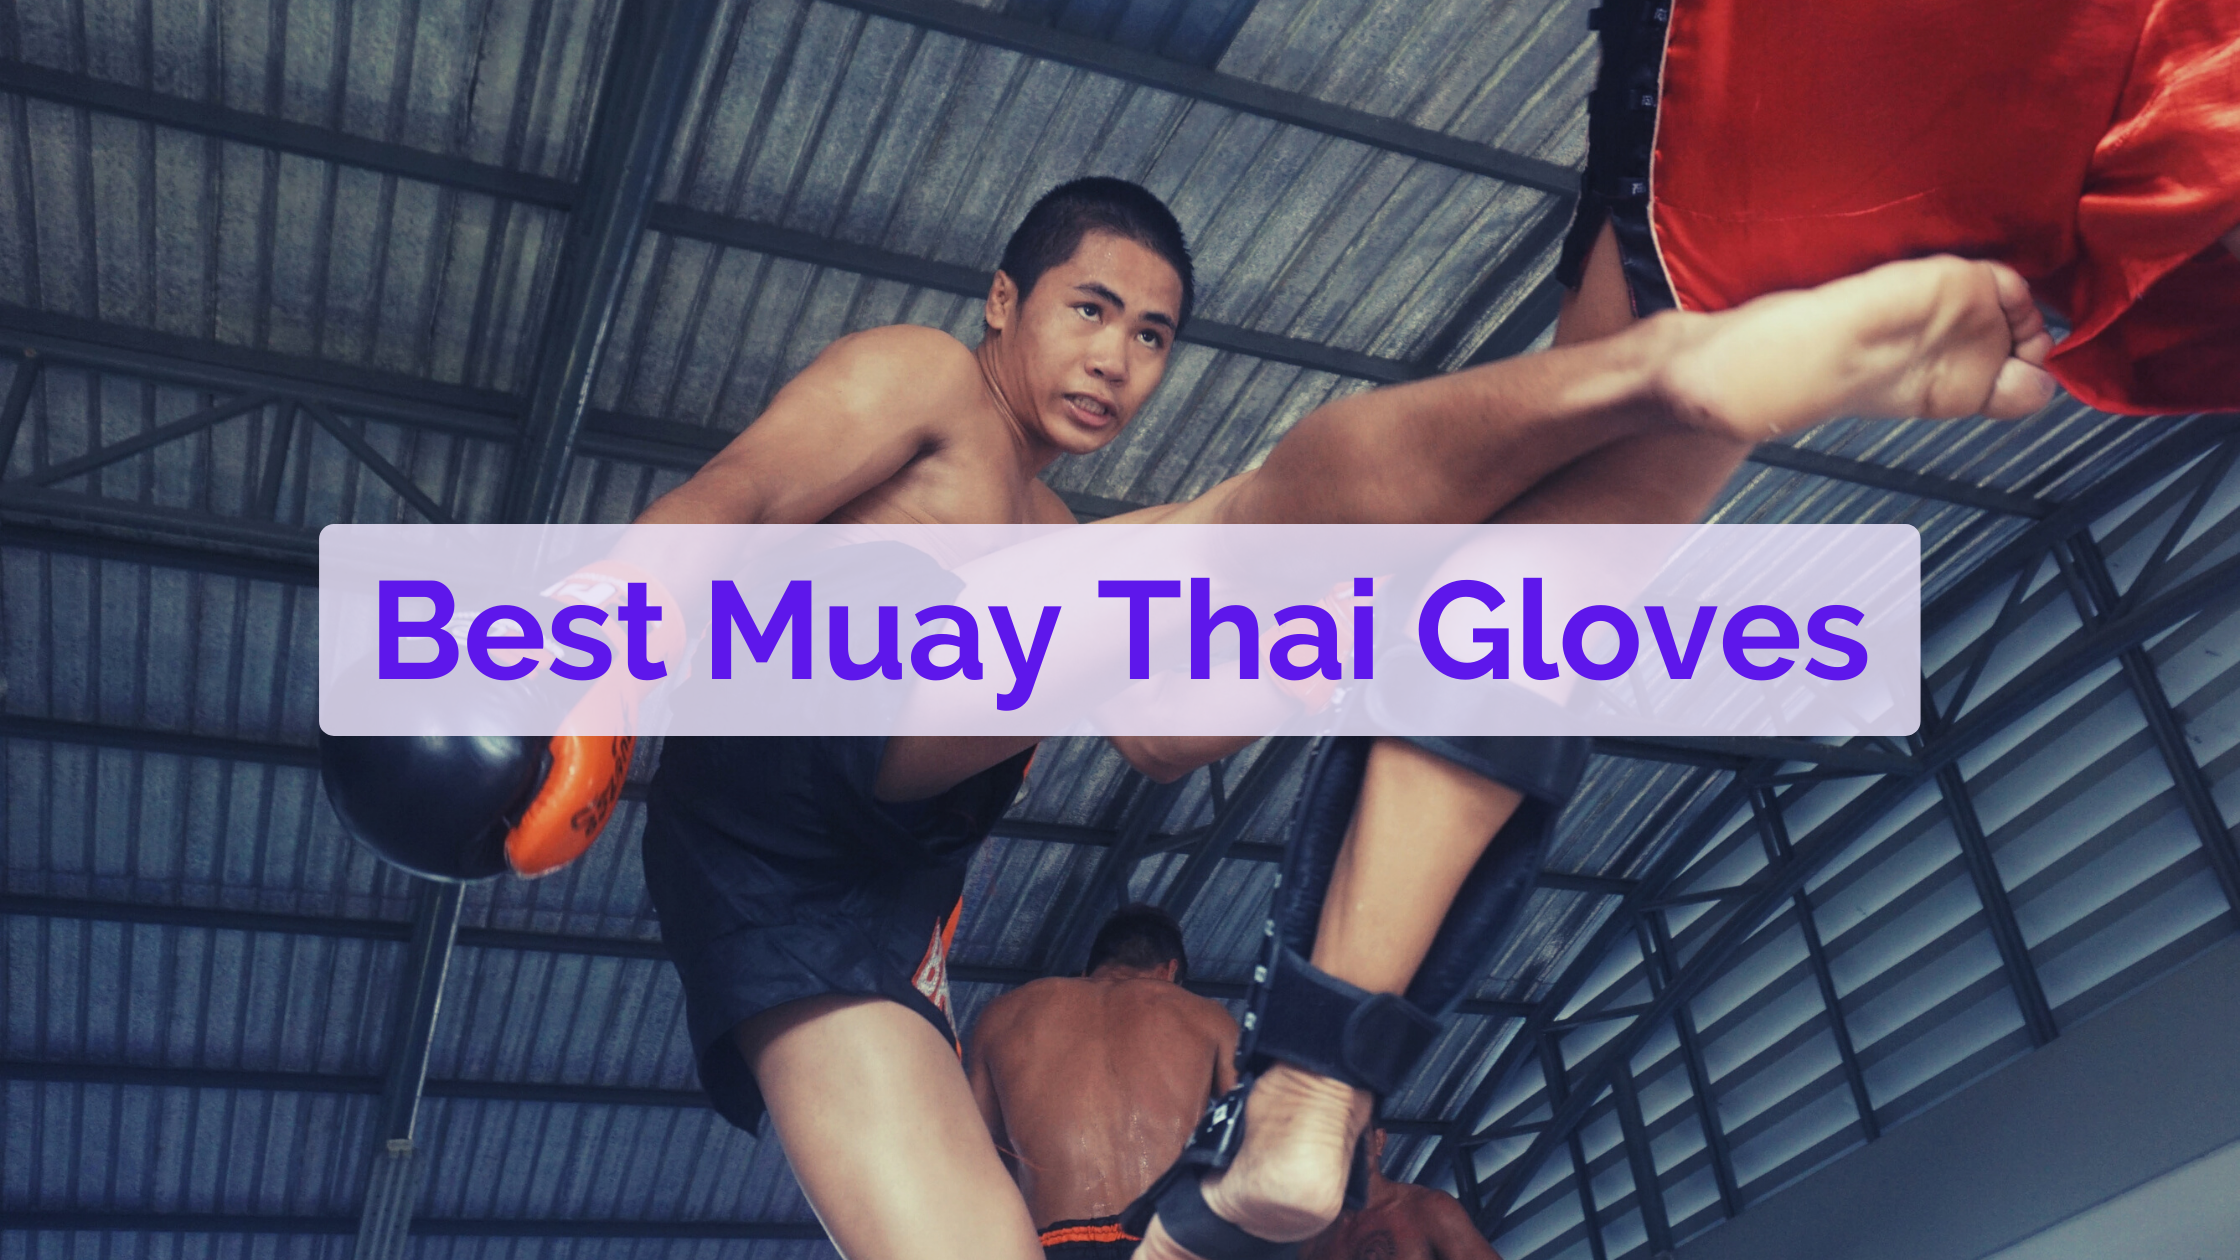 best muay thai gloves